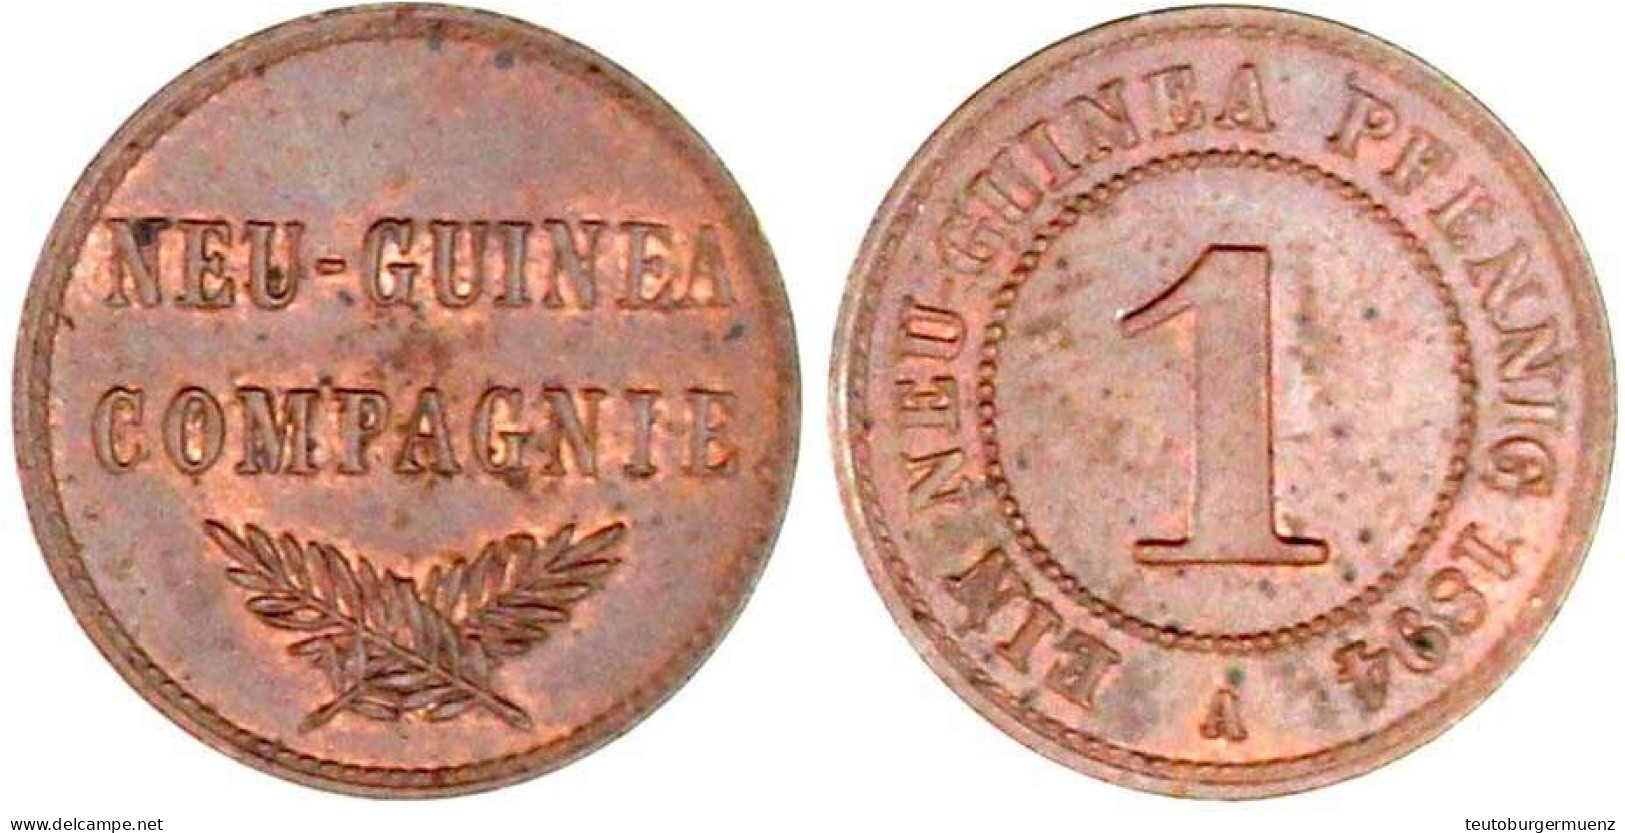 1 Neuguinea Pfennig 1894 A. Vorzüglich/Stempelglanz. Jaeger 701. - Duits Nieuw-Guinea